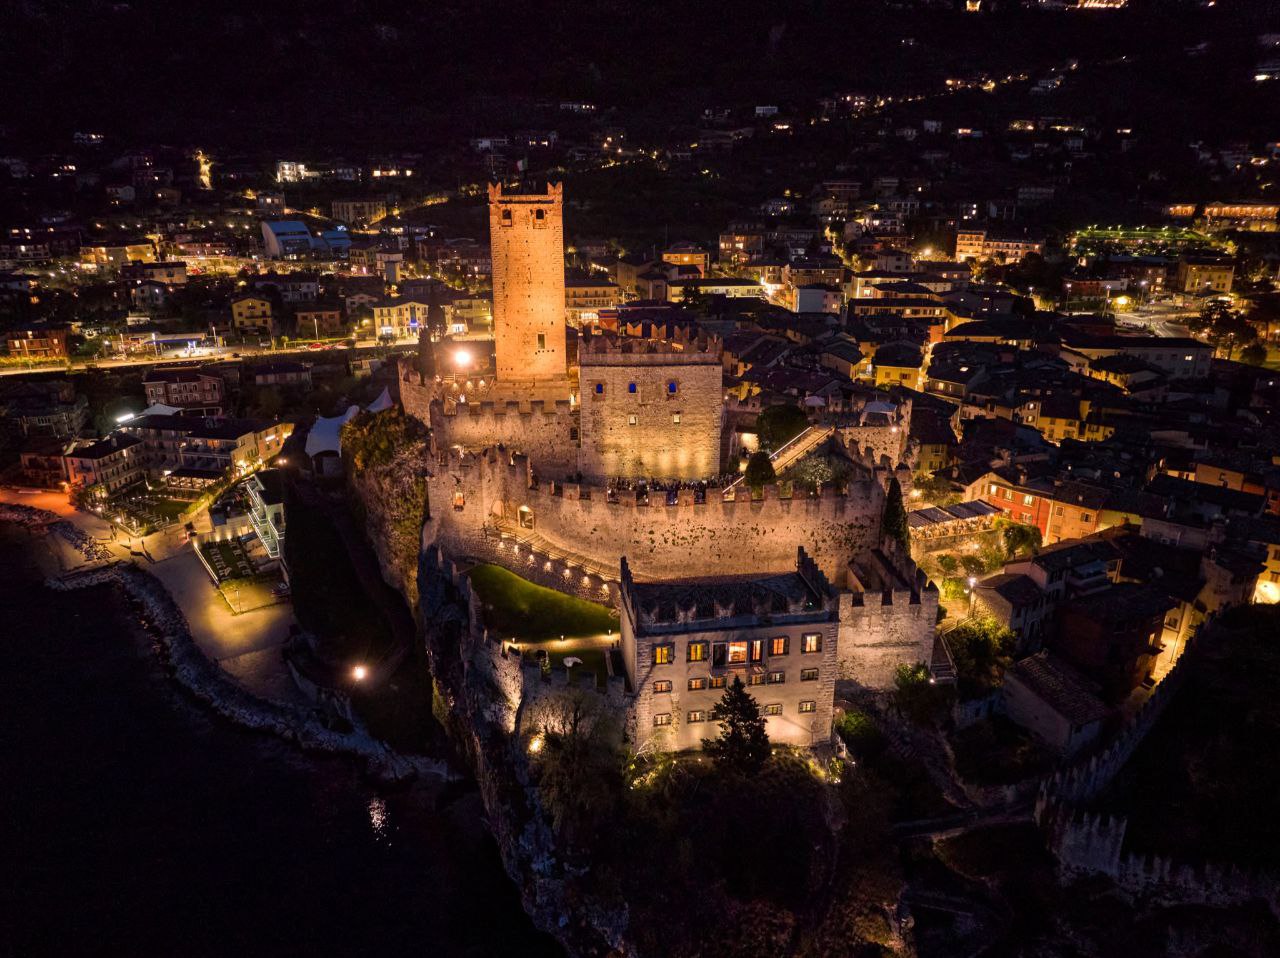 Il Castello di Malcesine illuminato accoglierà i visitatori anche nel periodo natalizio